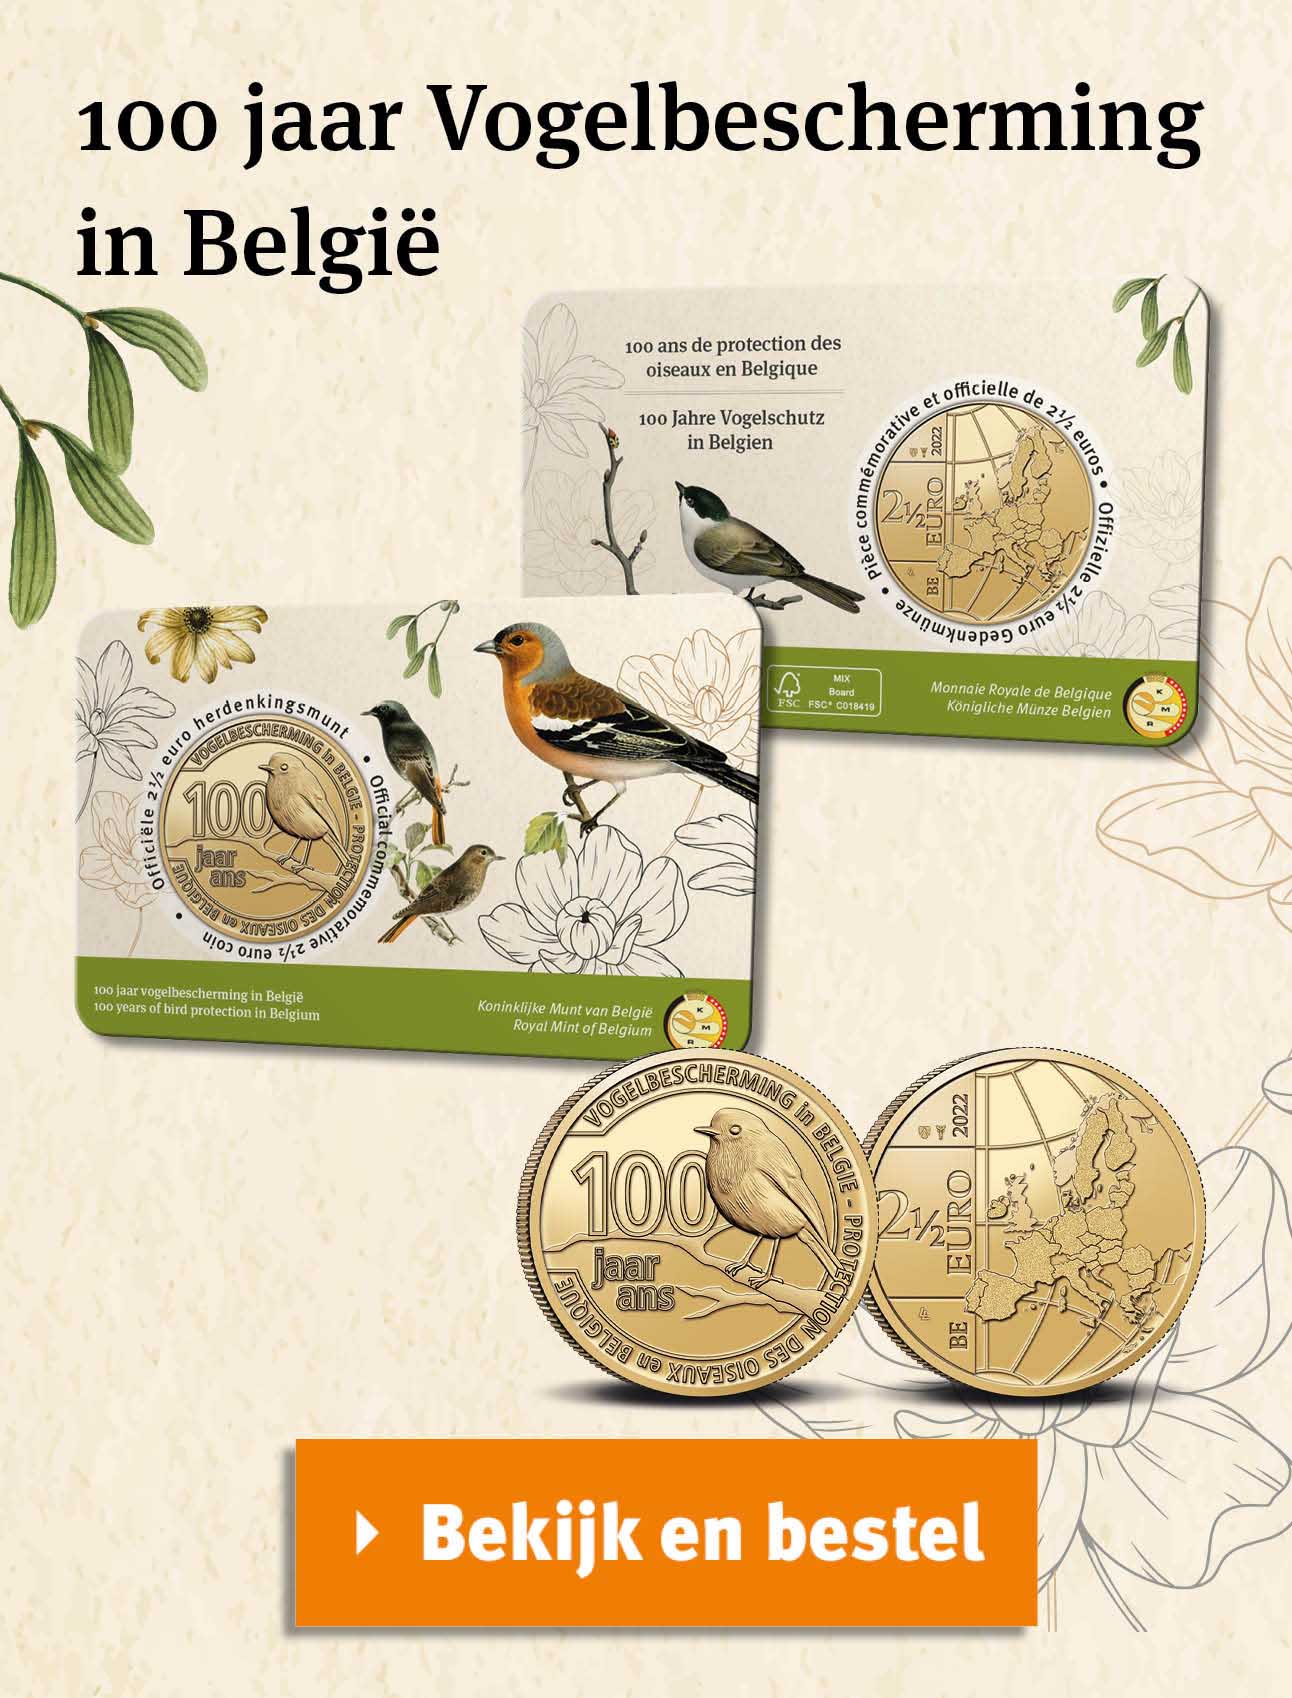 Bekijk en bestel: 100 jaar Vogelbescherming in Belgie